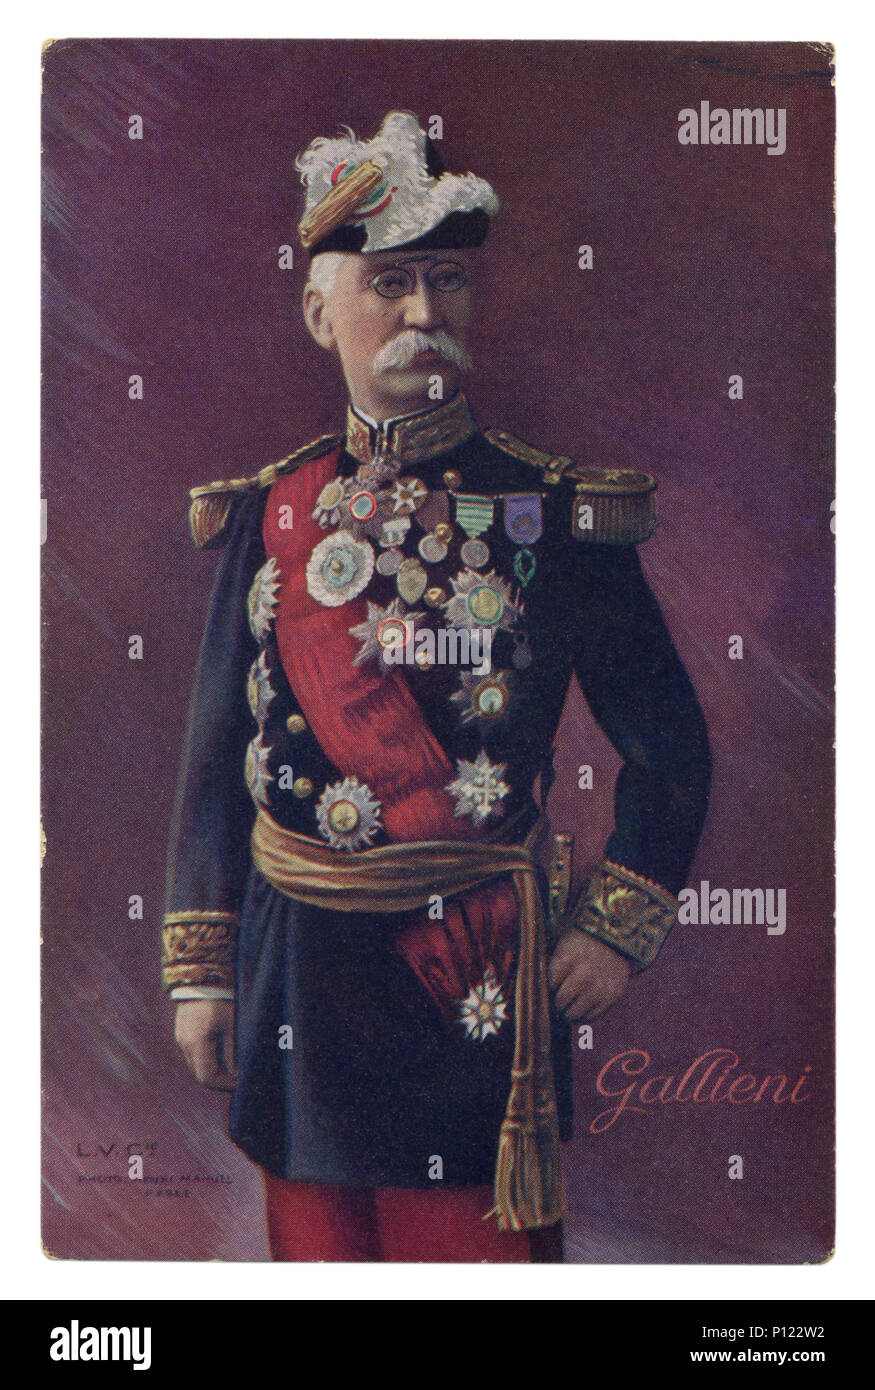 Französisch Historische Postkarte: General Gallieni in der vorderen Uniform mit vielen Auszeichnungen und ein rotes Band mit einem Schwert. Erster Weltkrieg 1914-1918 Stockfoto